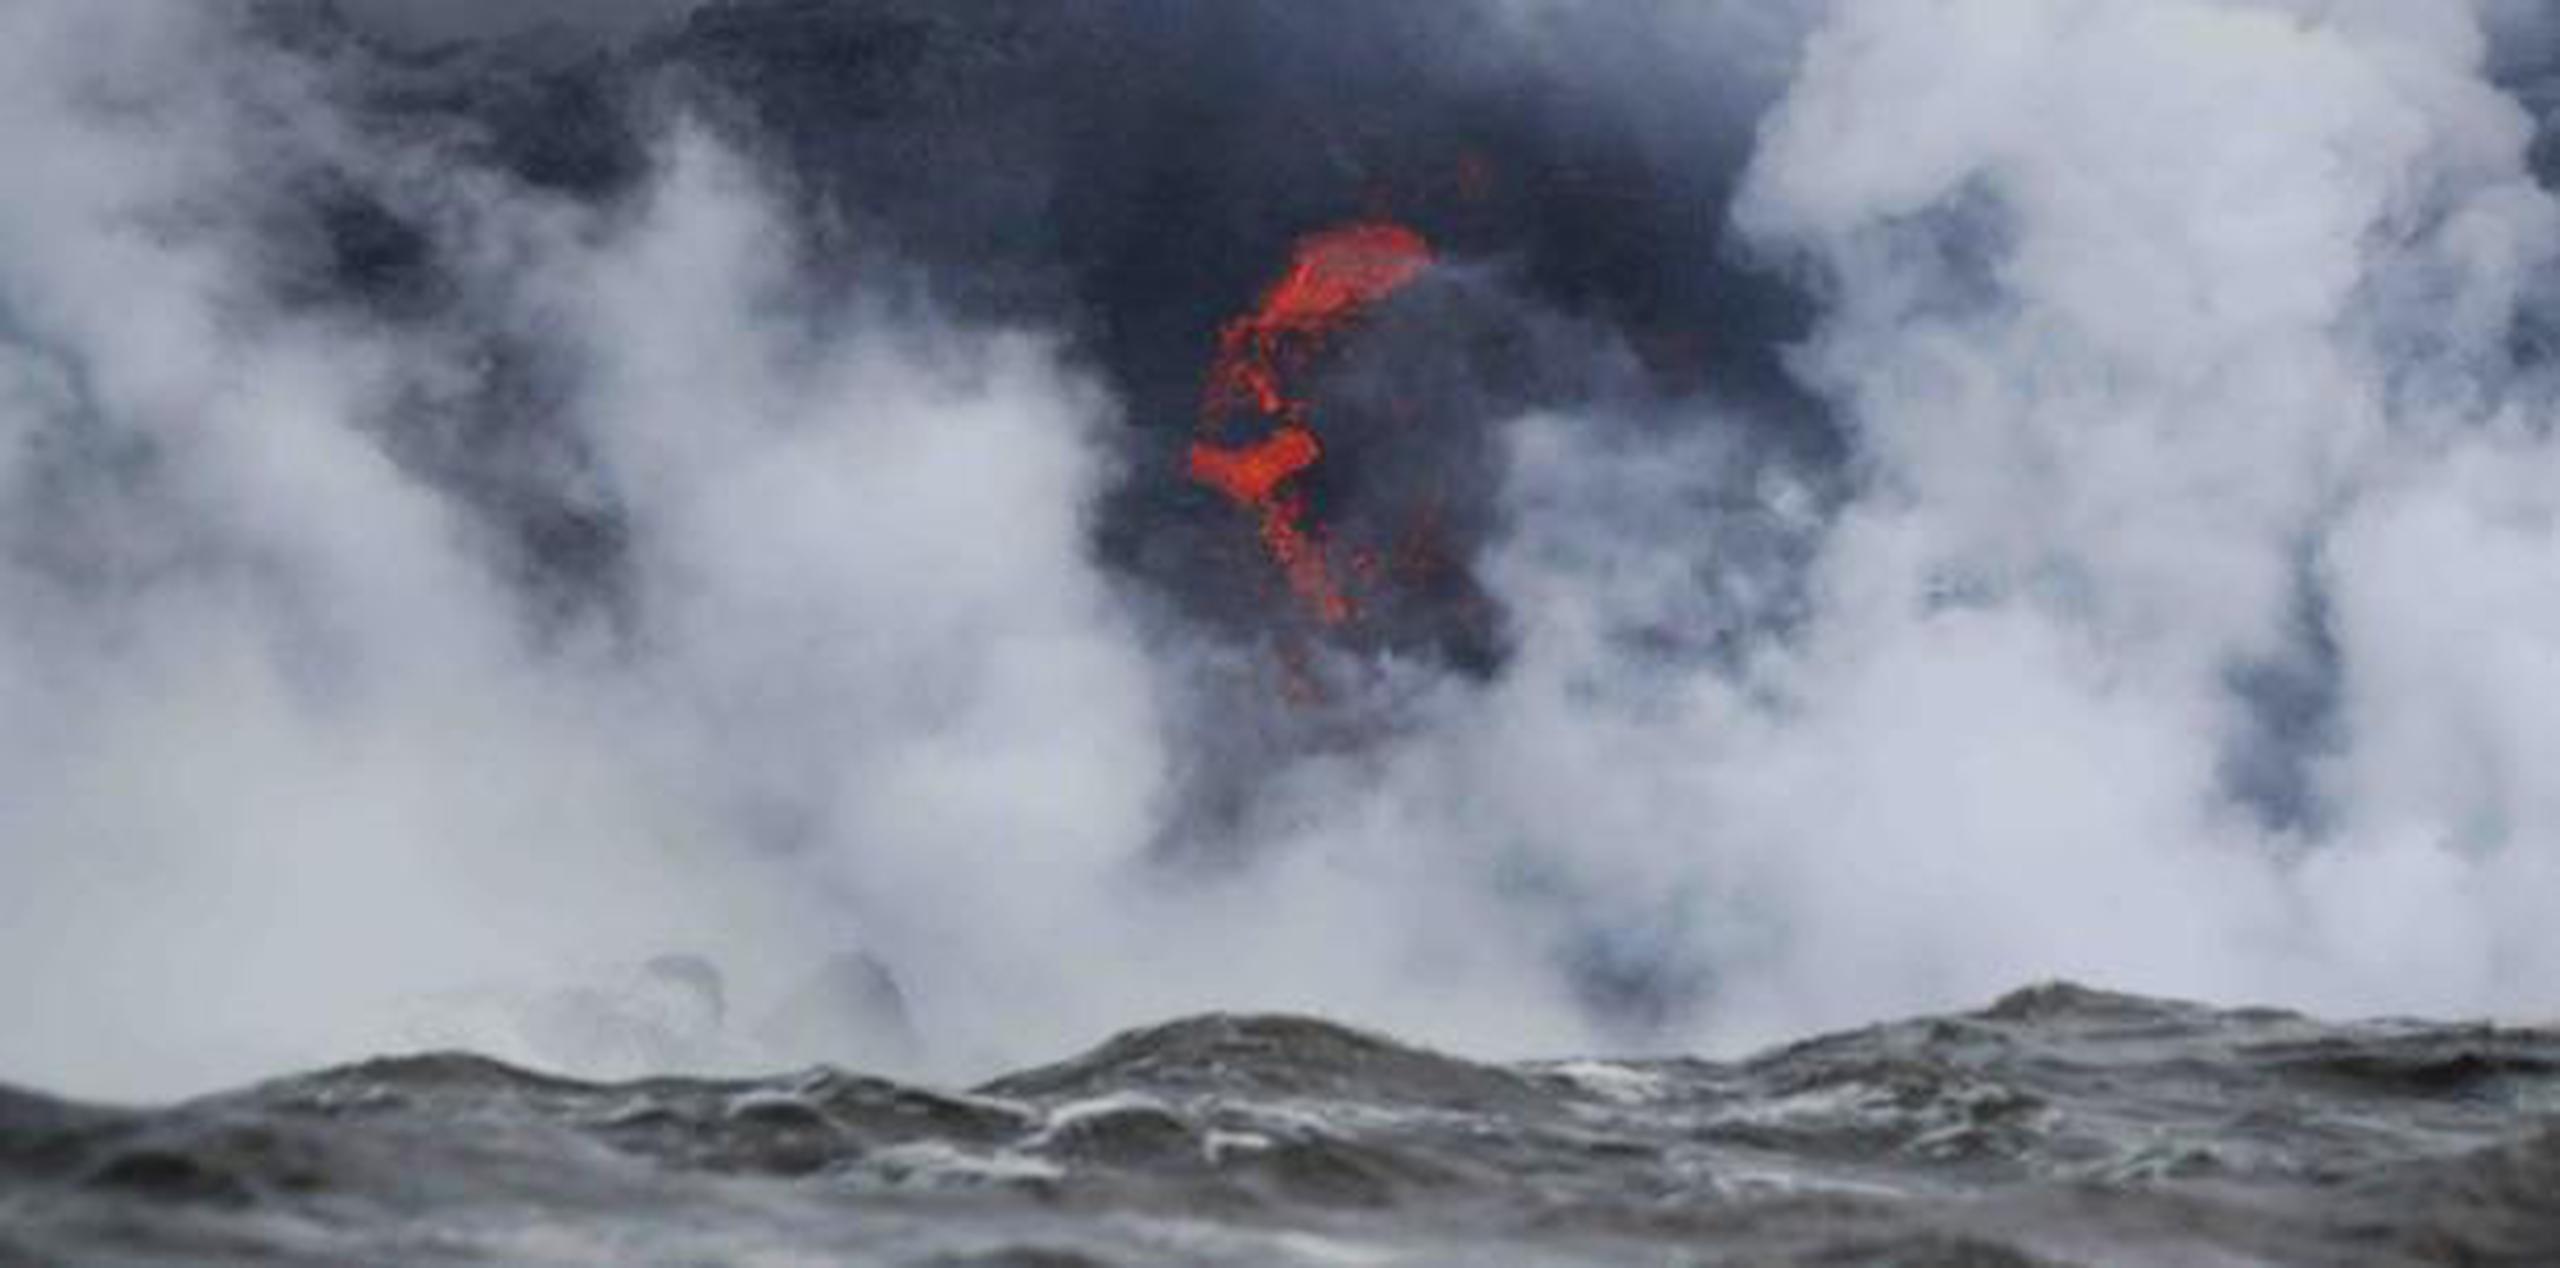 El Servicio Geológico de Estados Unidos dice que explosiones de distintos tamaños ocurren cuando la lava a 2,000 grados Fahrenheit ingresa al mar, cuya temperatura es mucho menor. (Archivo)